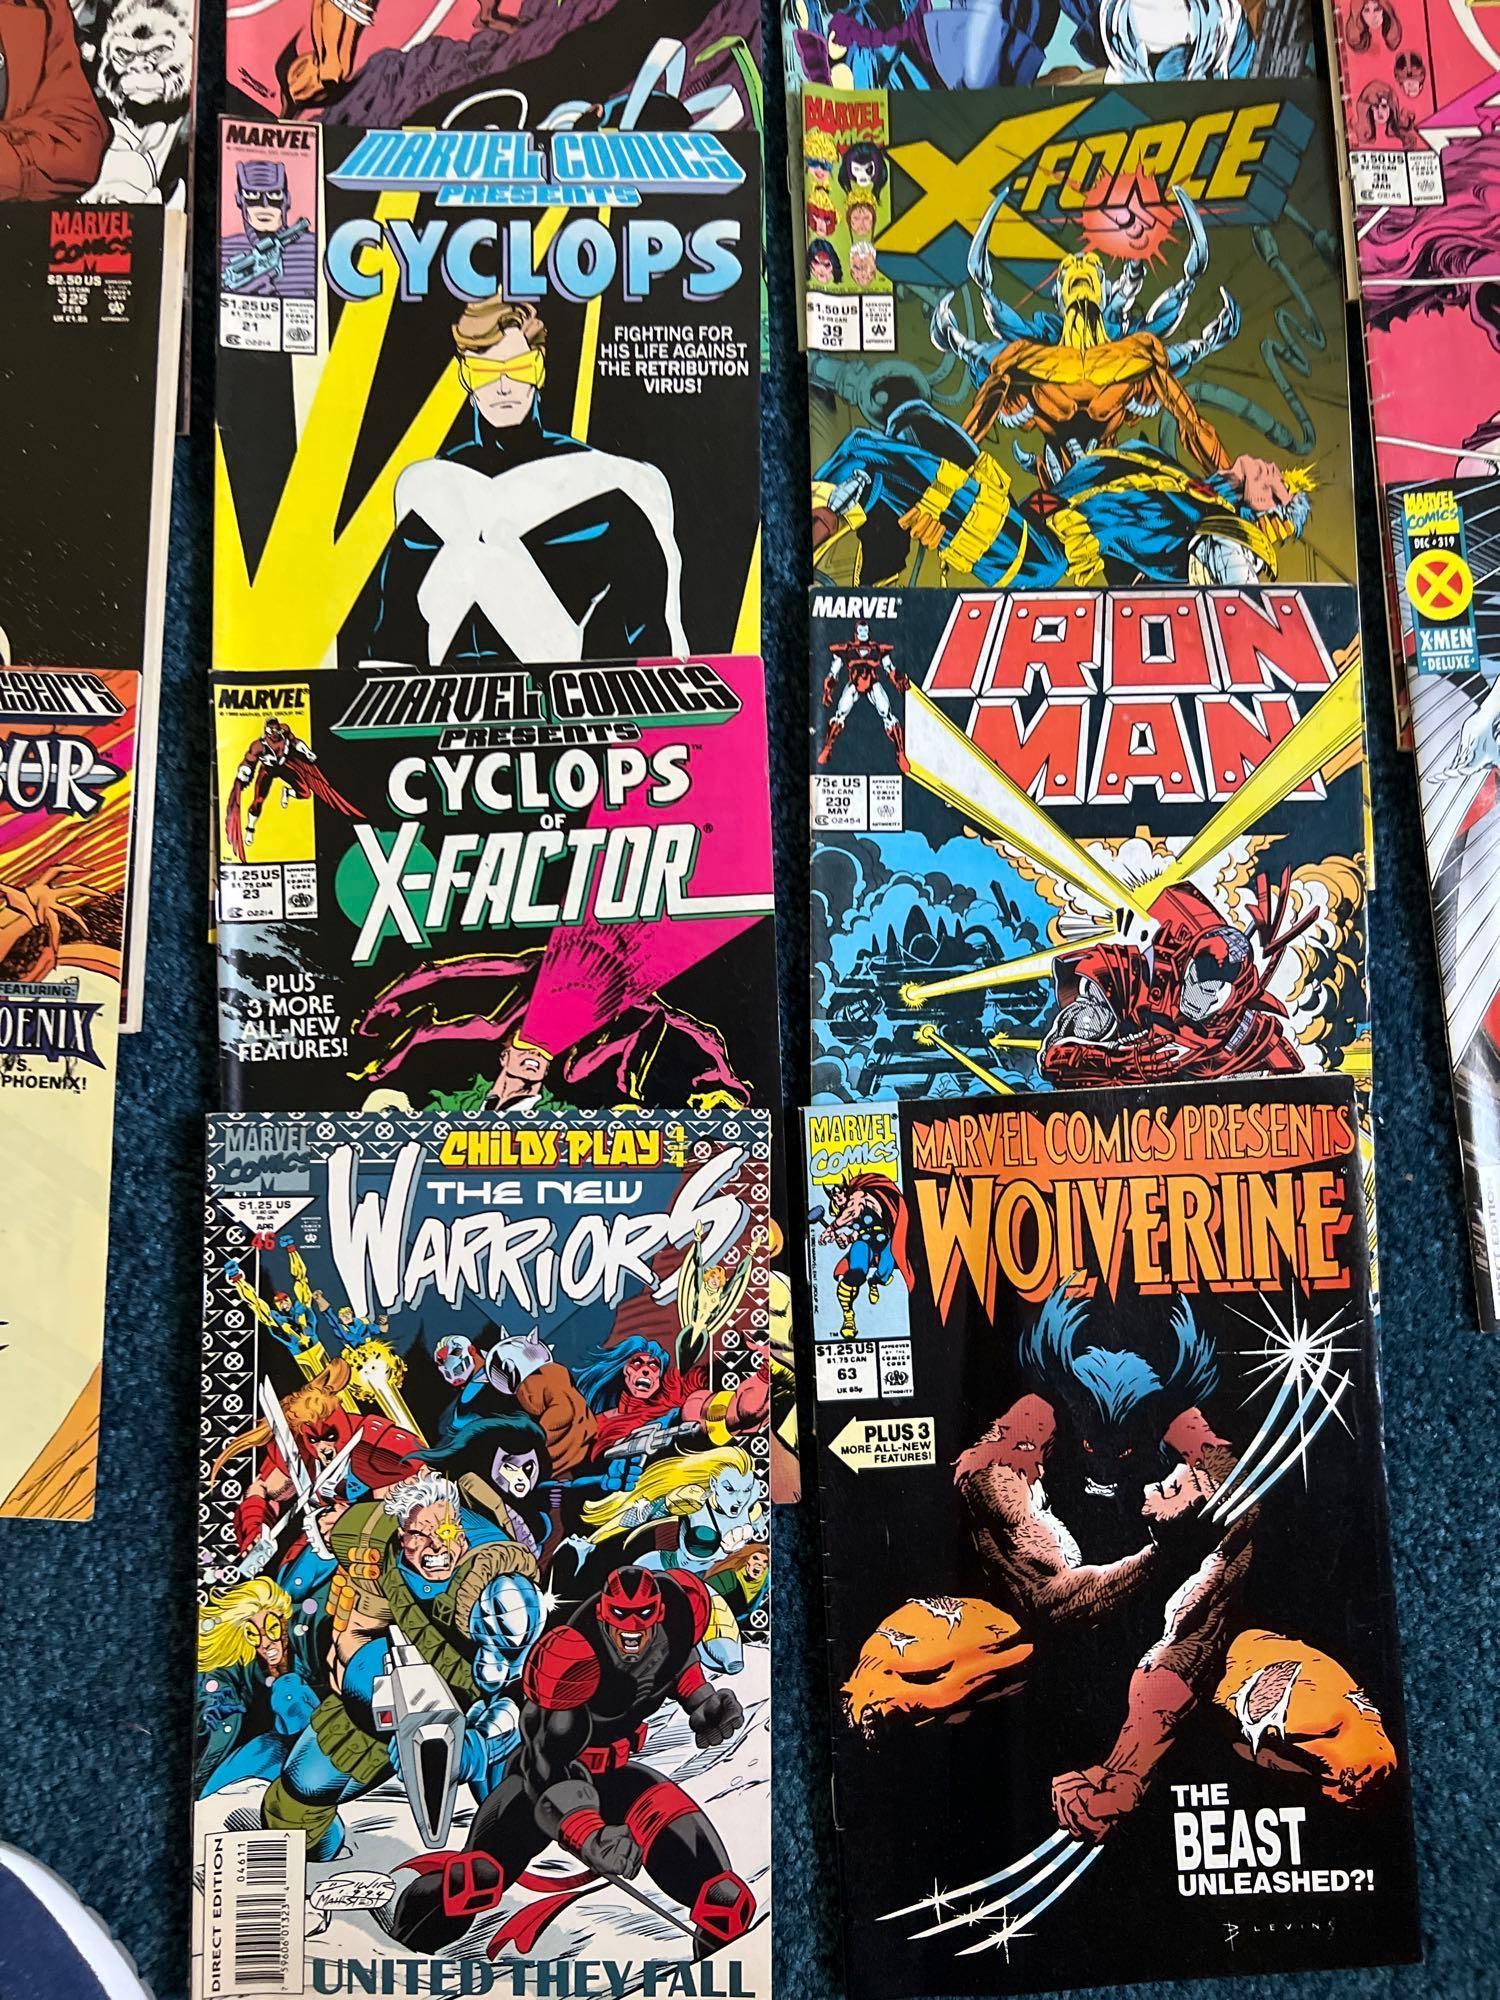 (50) Vintage Marvel Comic Books